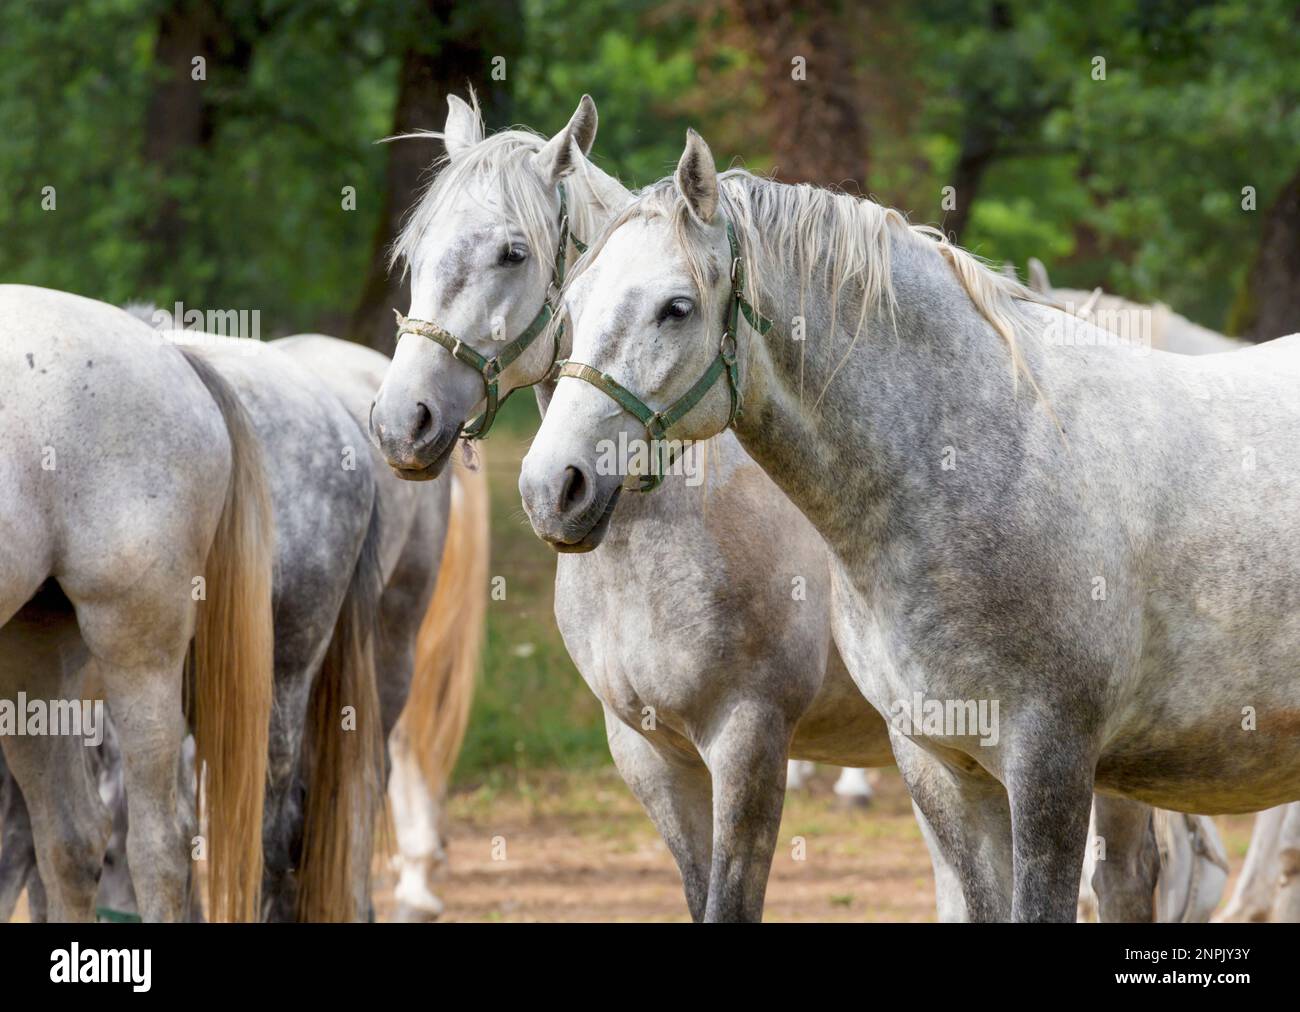 Lipica, in der Nähe von Sezana, Littoral Slowenisch Slowenien.  Lipizanner oder Lipizan Pferde im Gestüt Lipica. Stockfoto